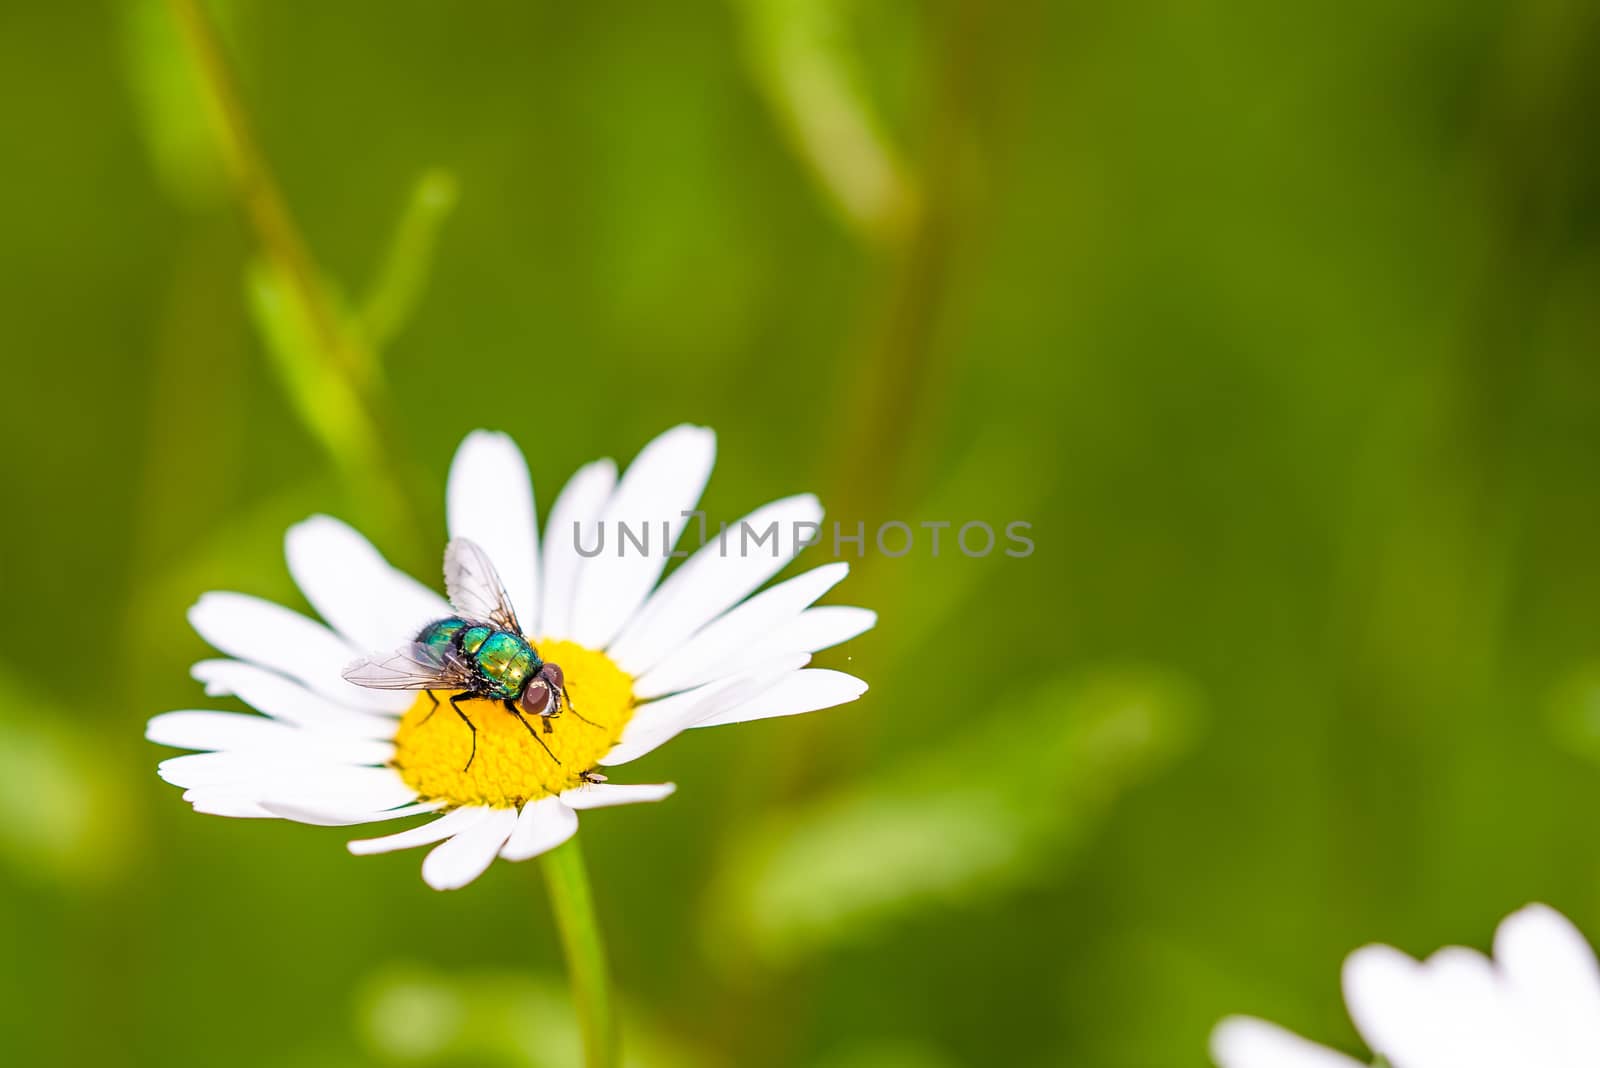 Bottle fly on daisy, macro by asafaric